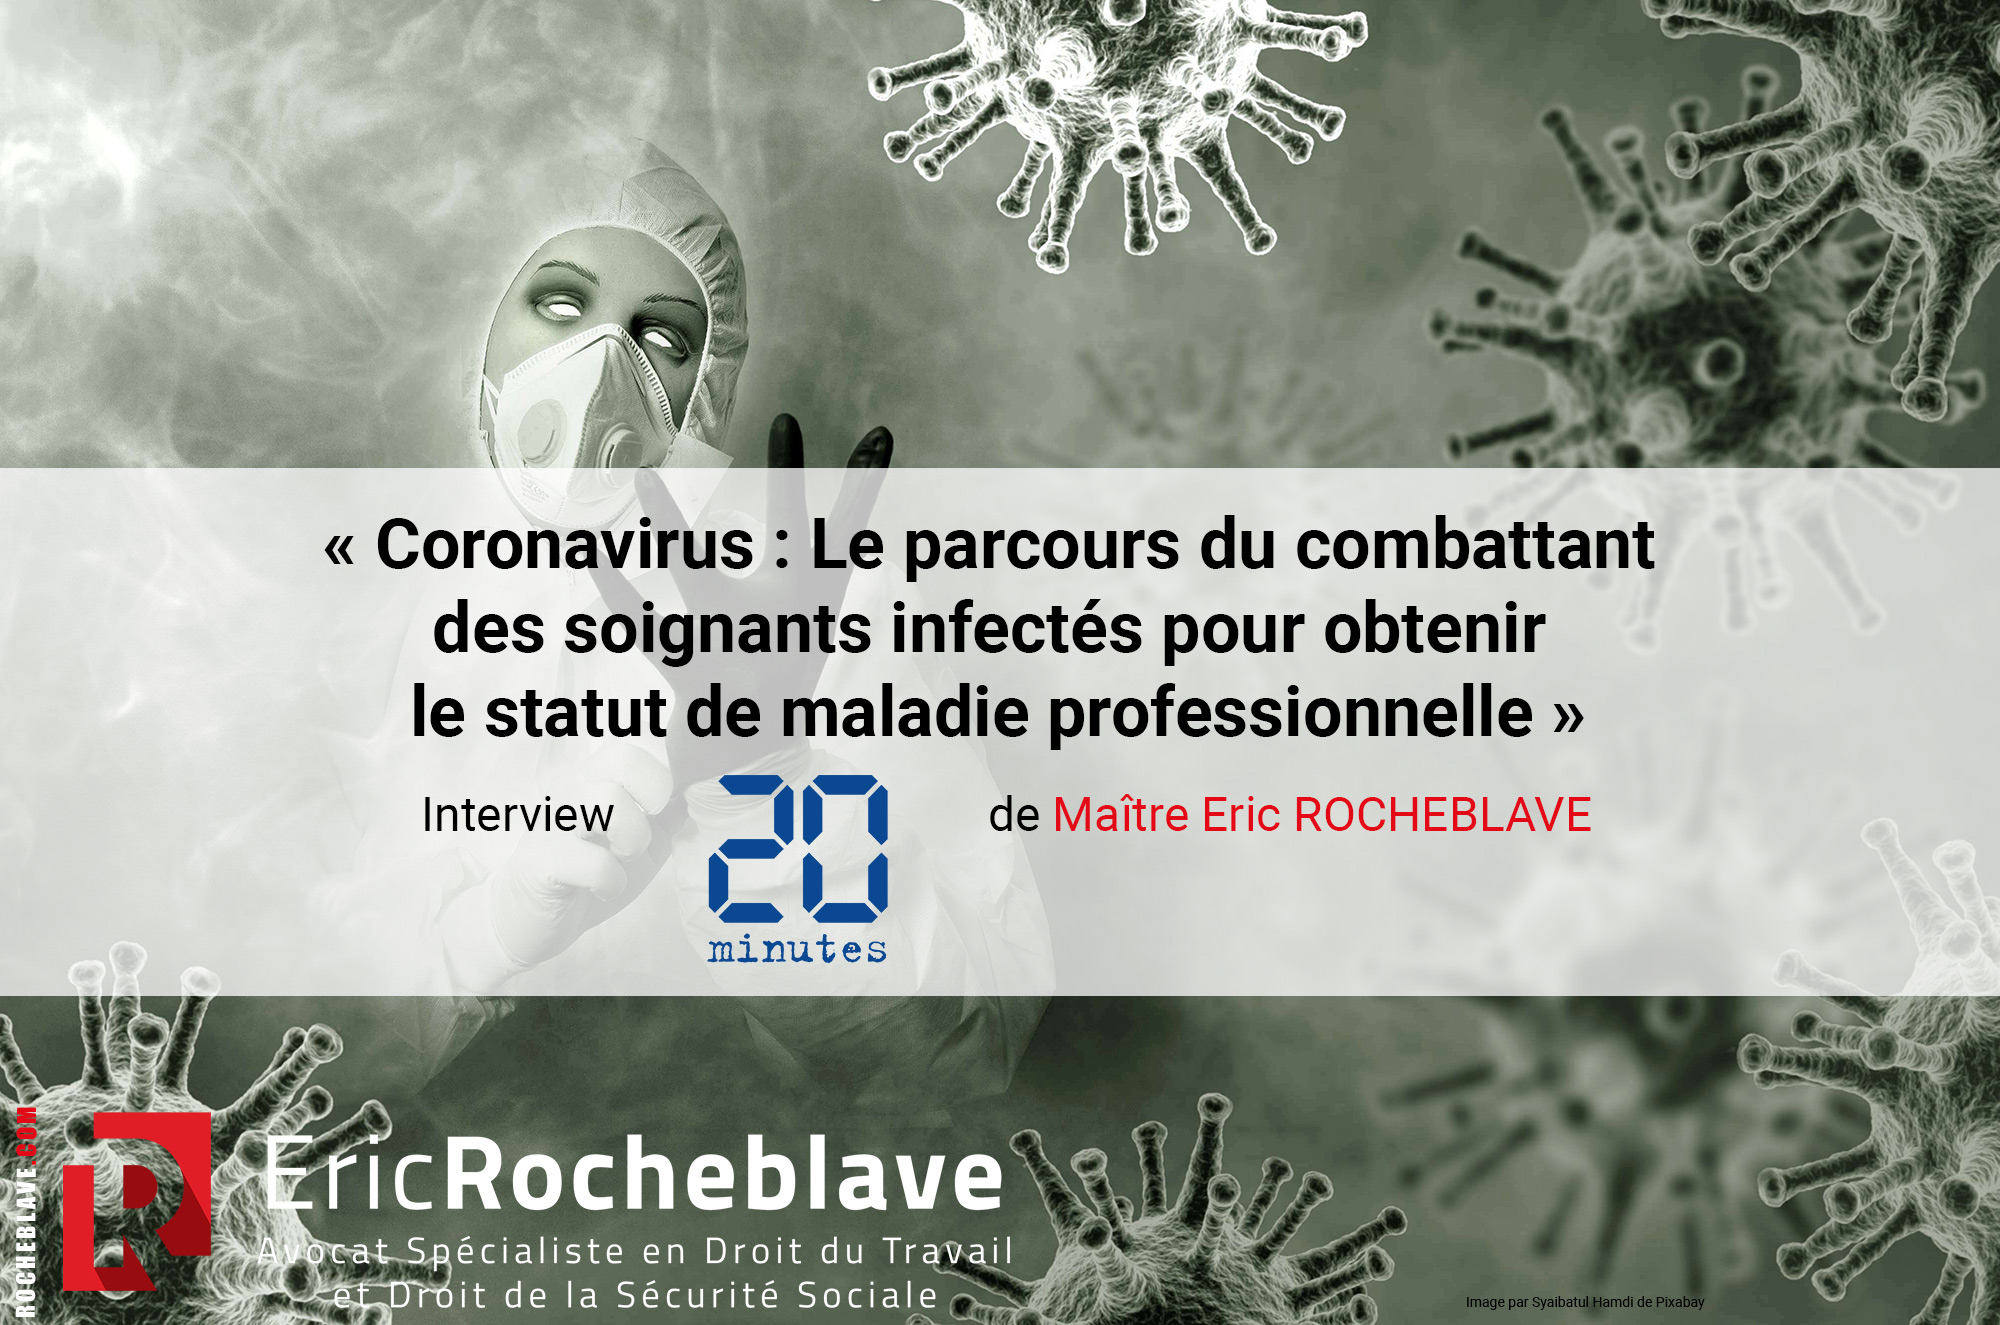 « Coronavirus : Le parcours du combattant des soignants infectés pour obtenir le statut de maladie professionnelle »  Interview 20 minutes de Maître Eric ROCHEBLAVE